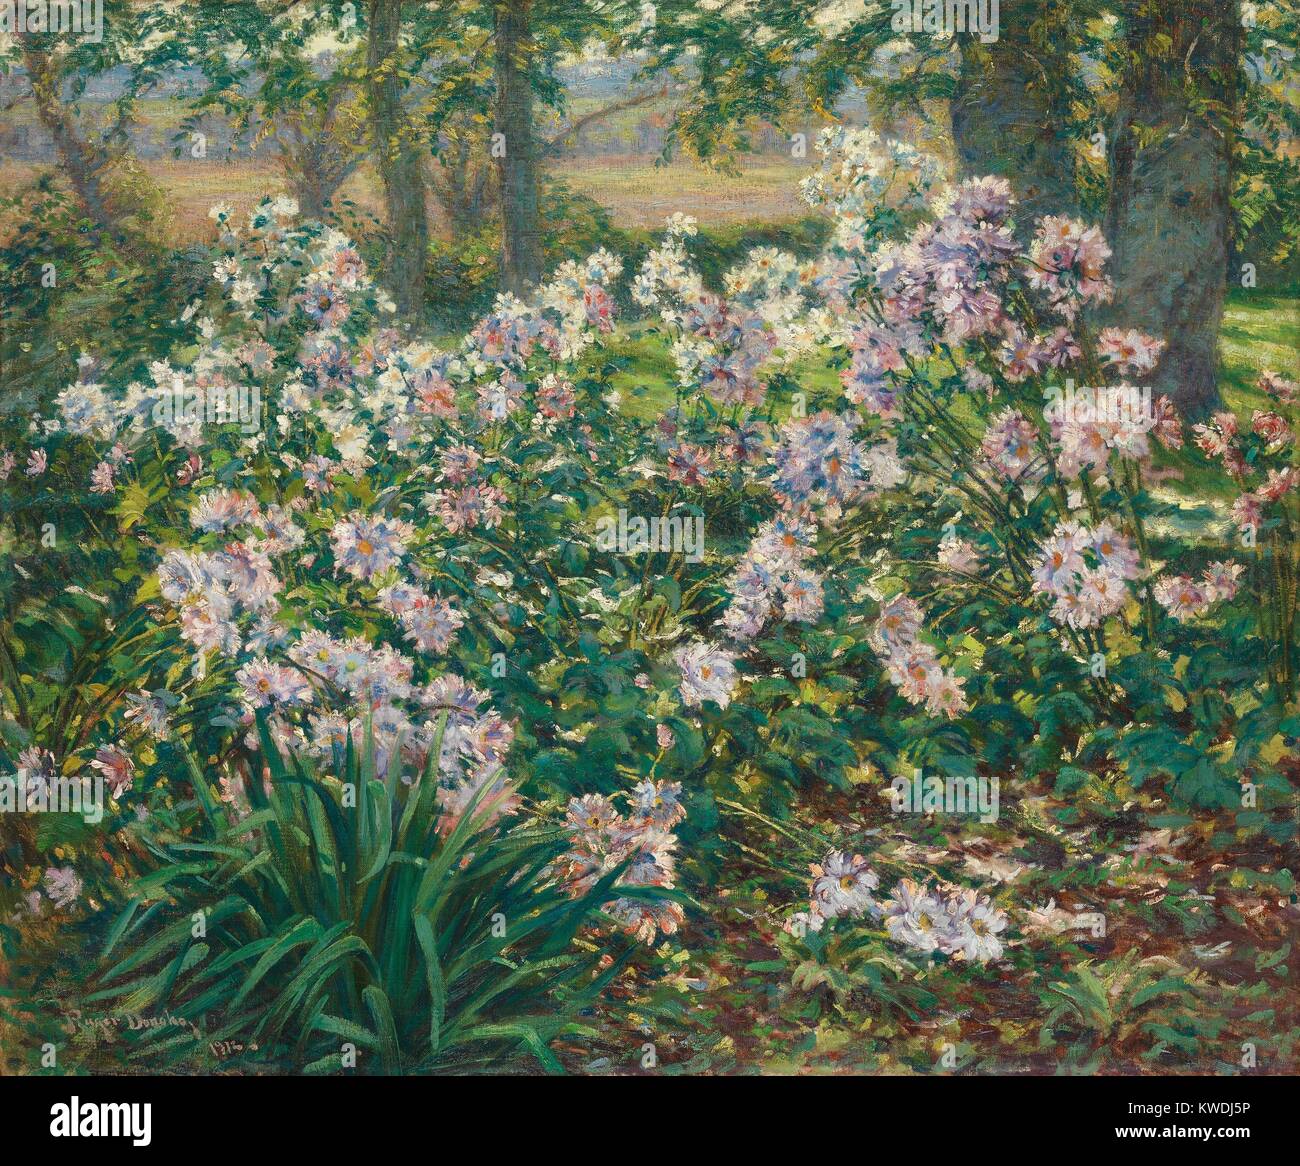 WINDFLOWERS, von Ruger Donoho, 1912, Amerikanische Malerei, Öl auf Leinwand. Blumen in einer Landschaft mit impressionistischen Farb- und Lackauftrag gemalt, mit naturalistischen Klarheit der Form und Raum (BSLOC 2017 9 14) Stockfoto